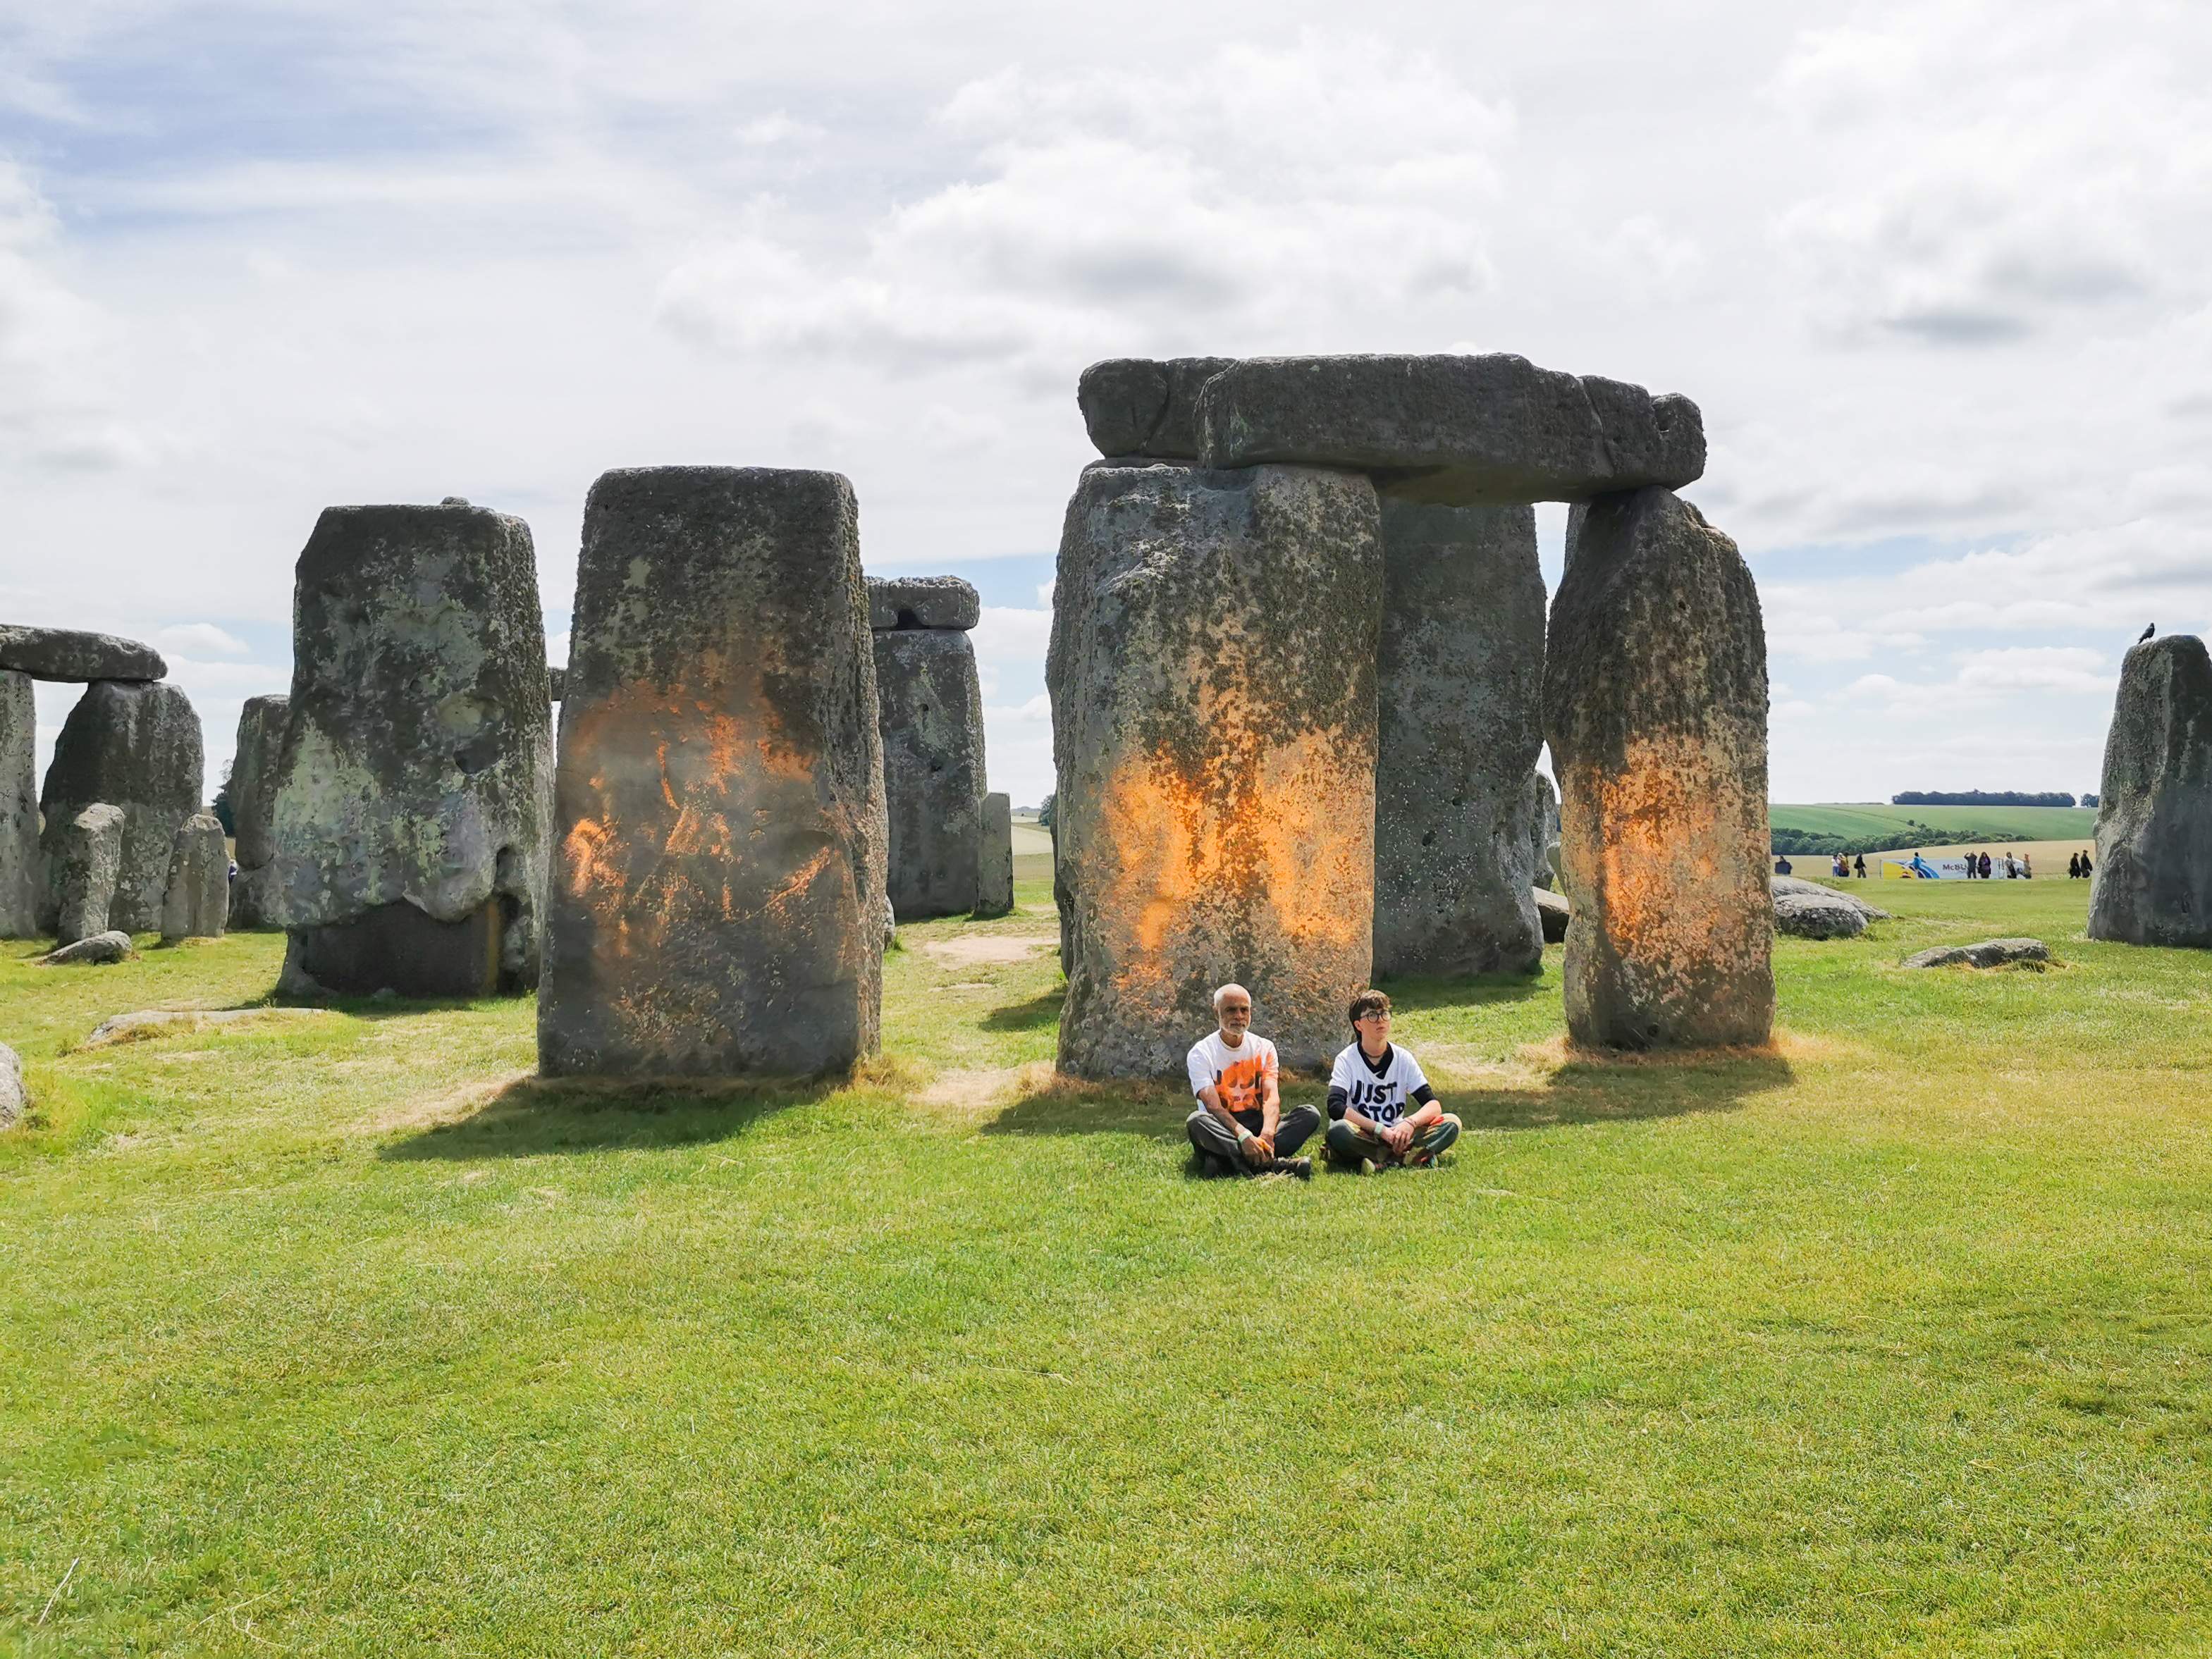 El monumento neolítico Stonehenge, teñido de naranja por unos activistas ecologistas